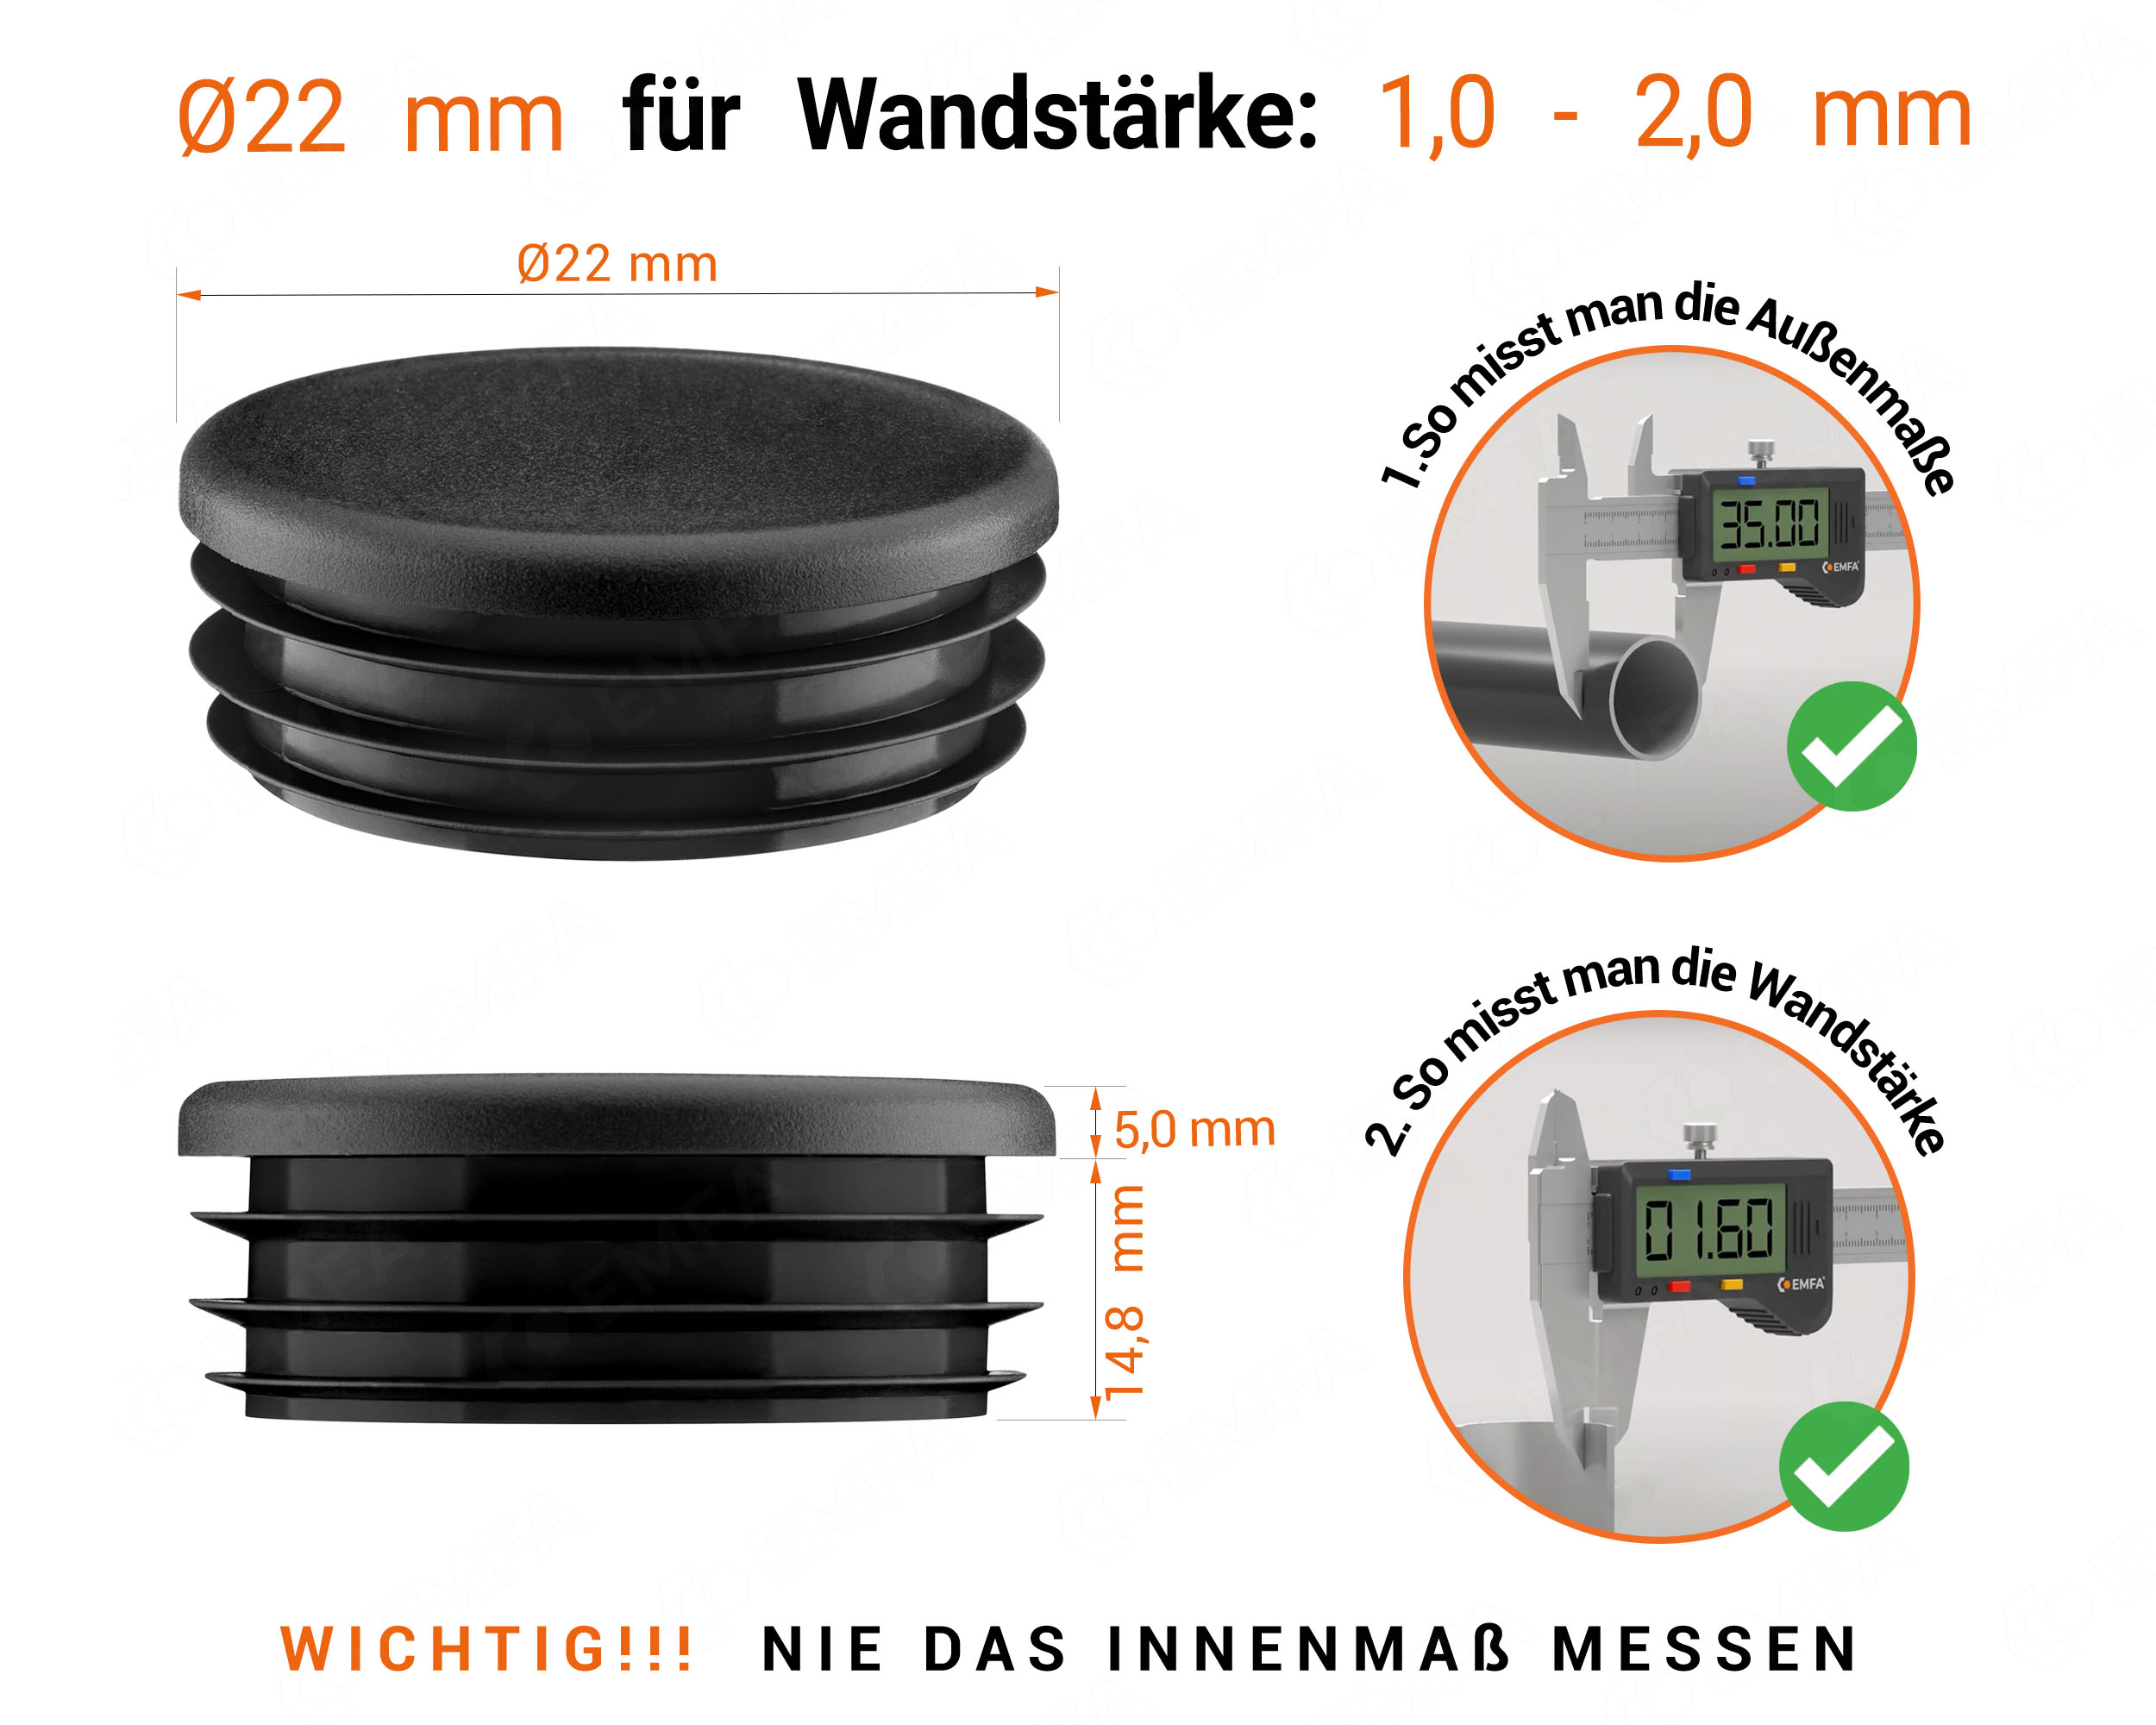 Schwarze Endkappe für Rundrohre in der Größe 22 mm mit technischen Abmessungen und Anleitung für korrekte Messung